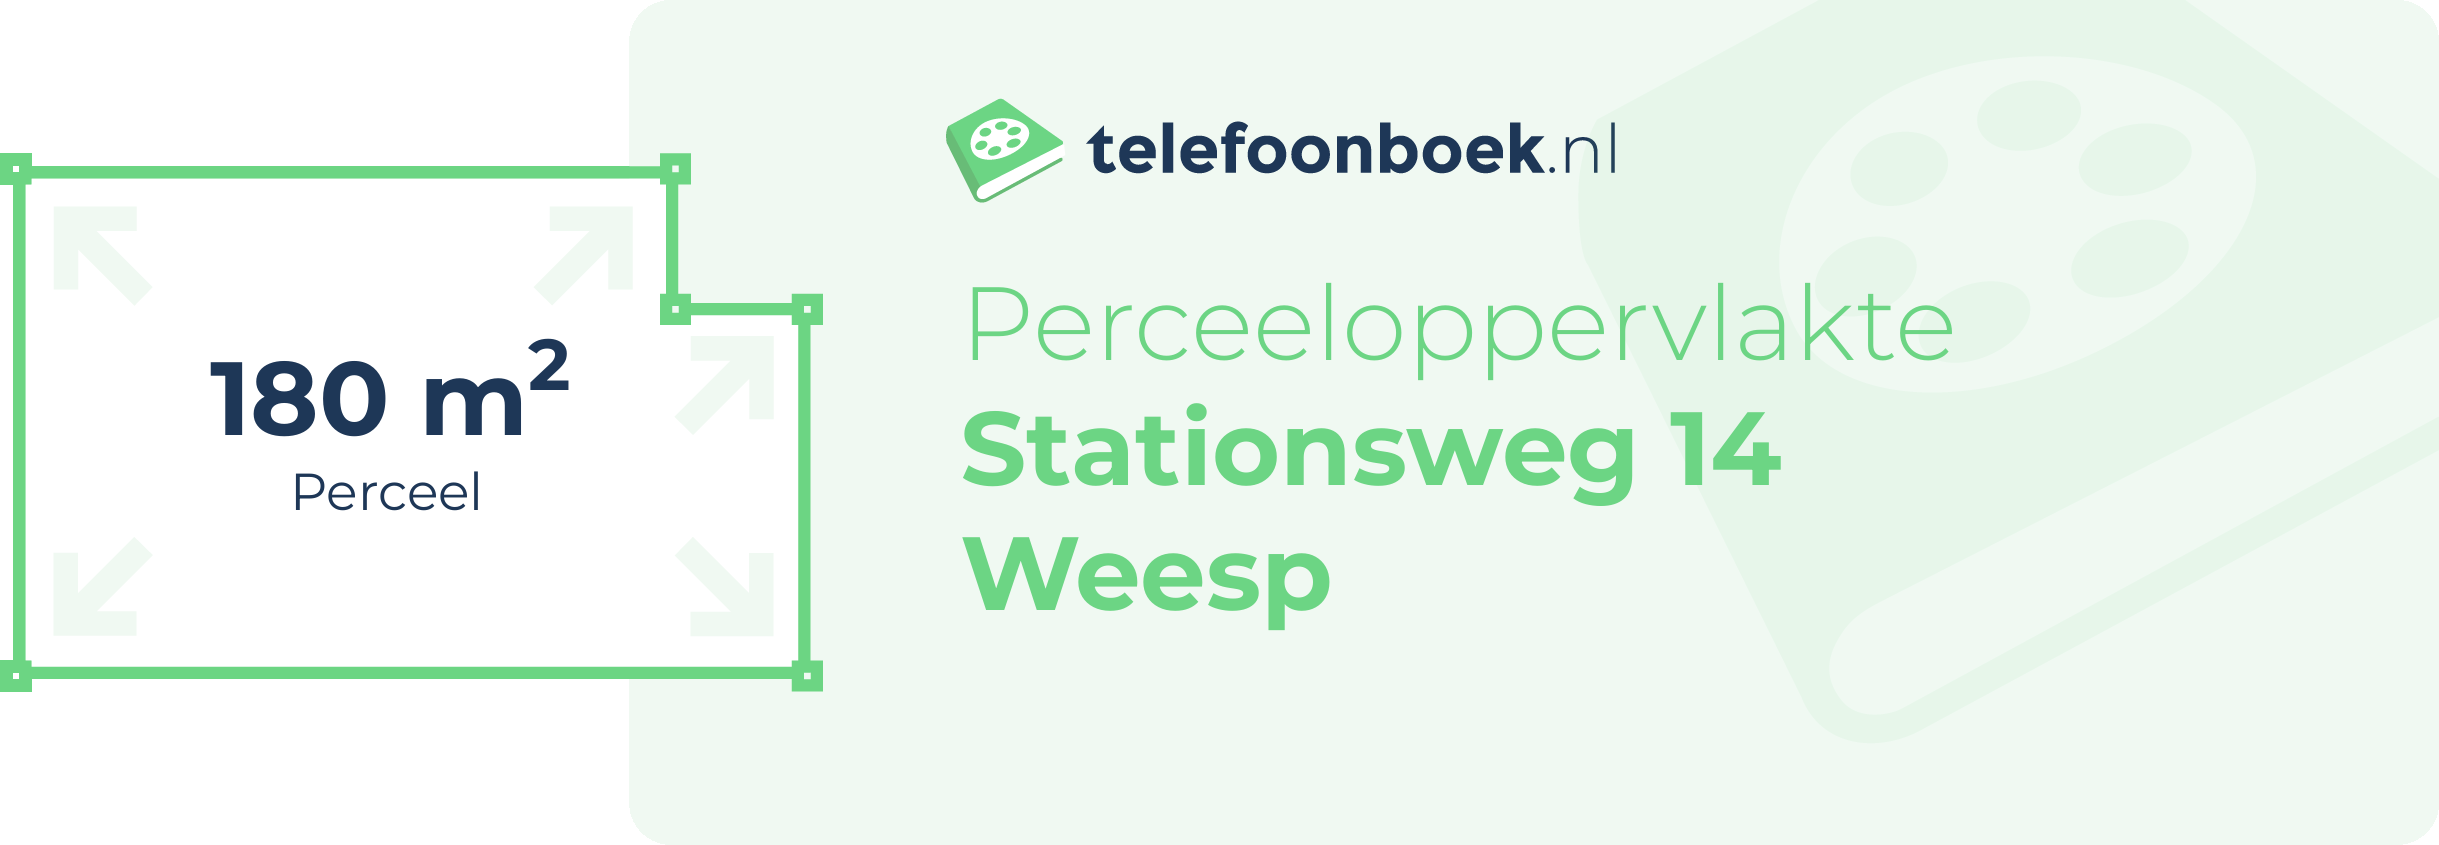 Perceeloppervlakte Stationsweg 14 Weesp